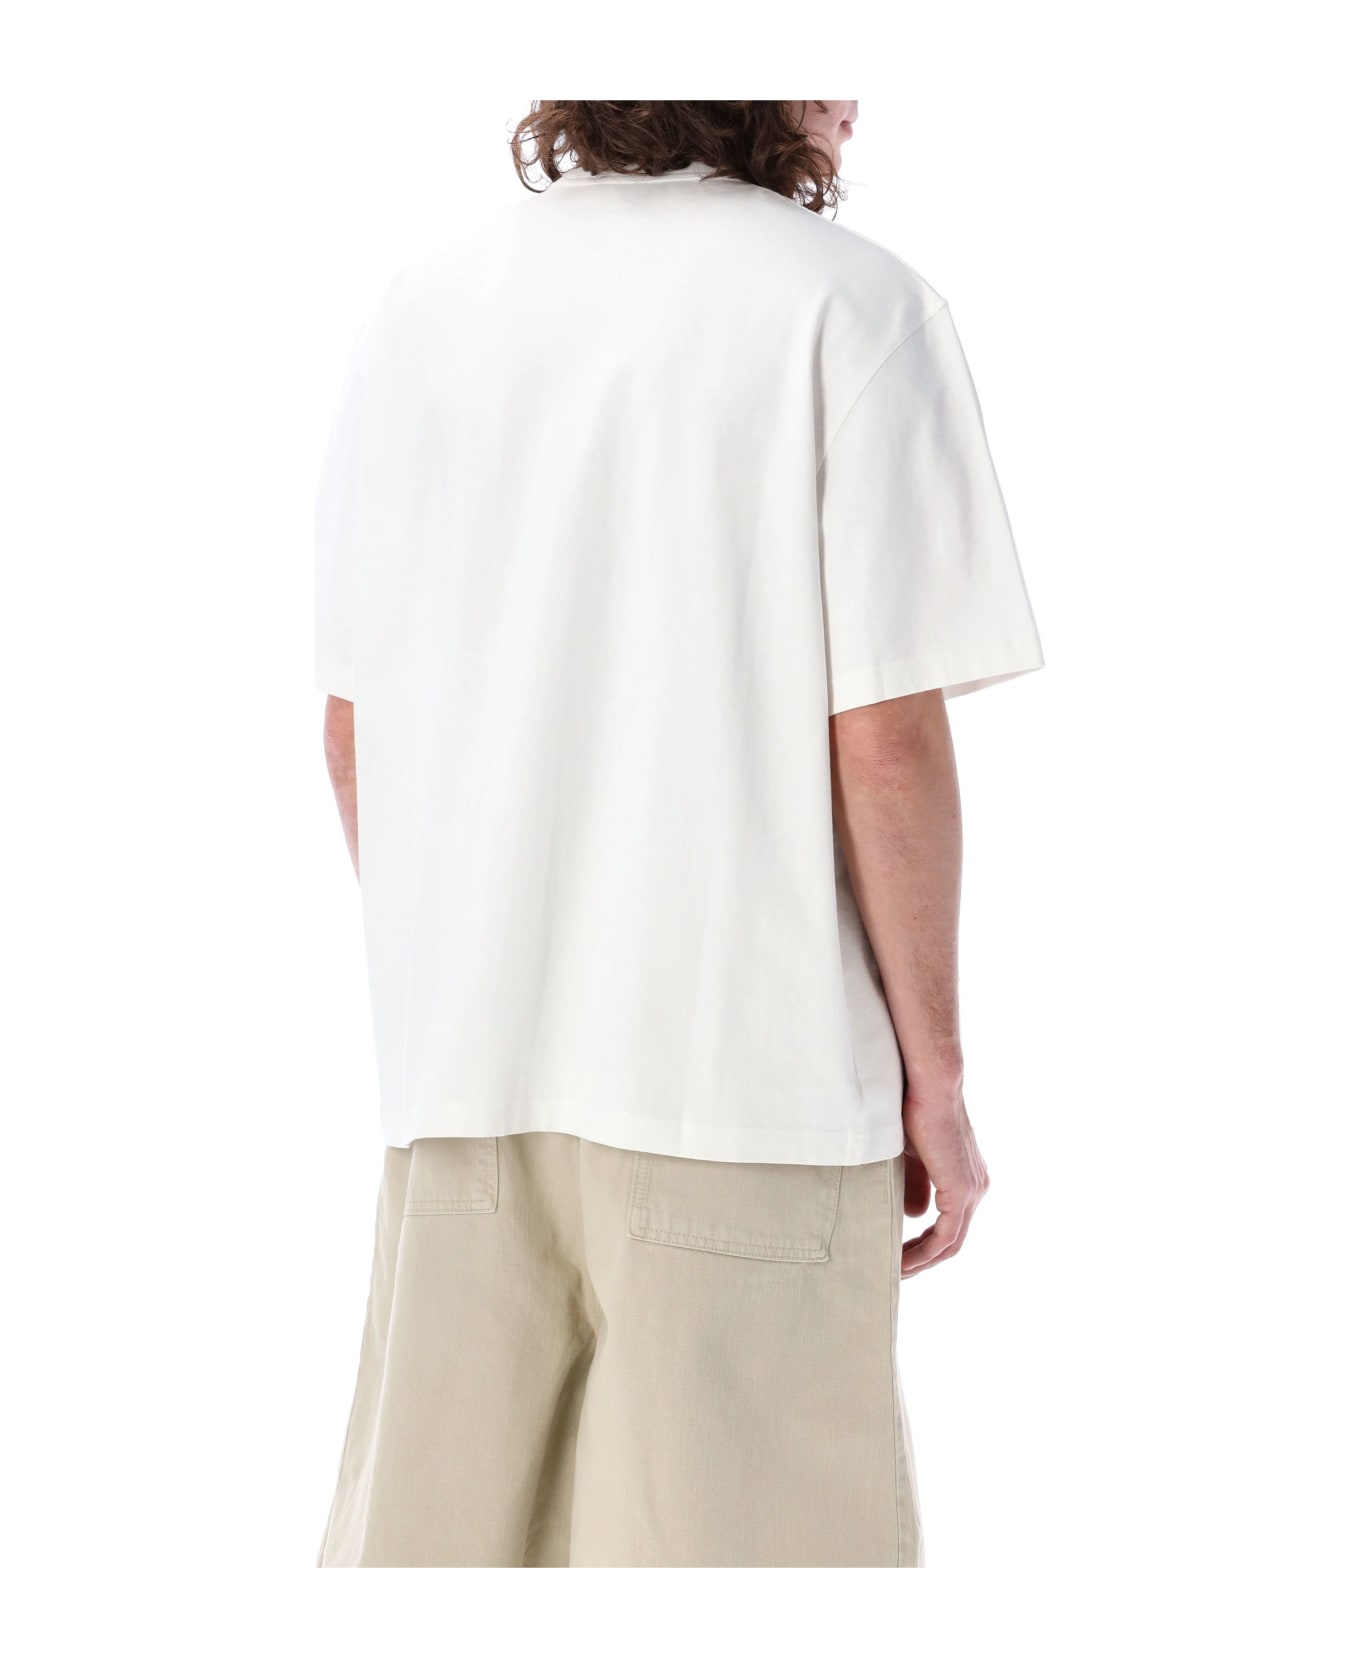 Studio Nicholson Module T-shirt - WHITE